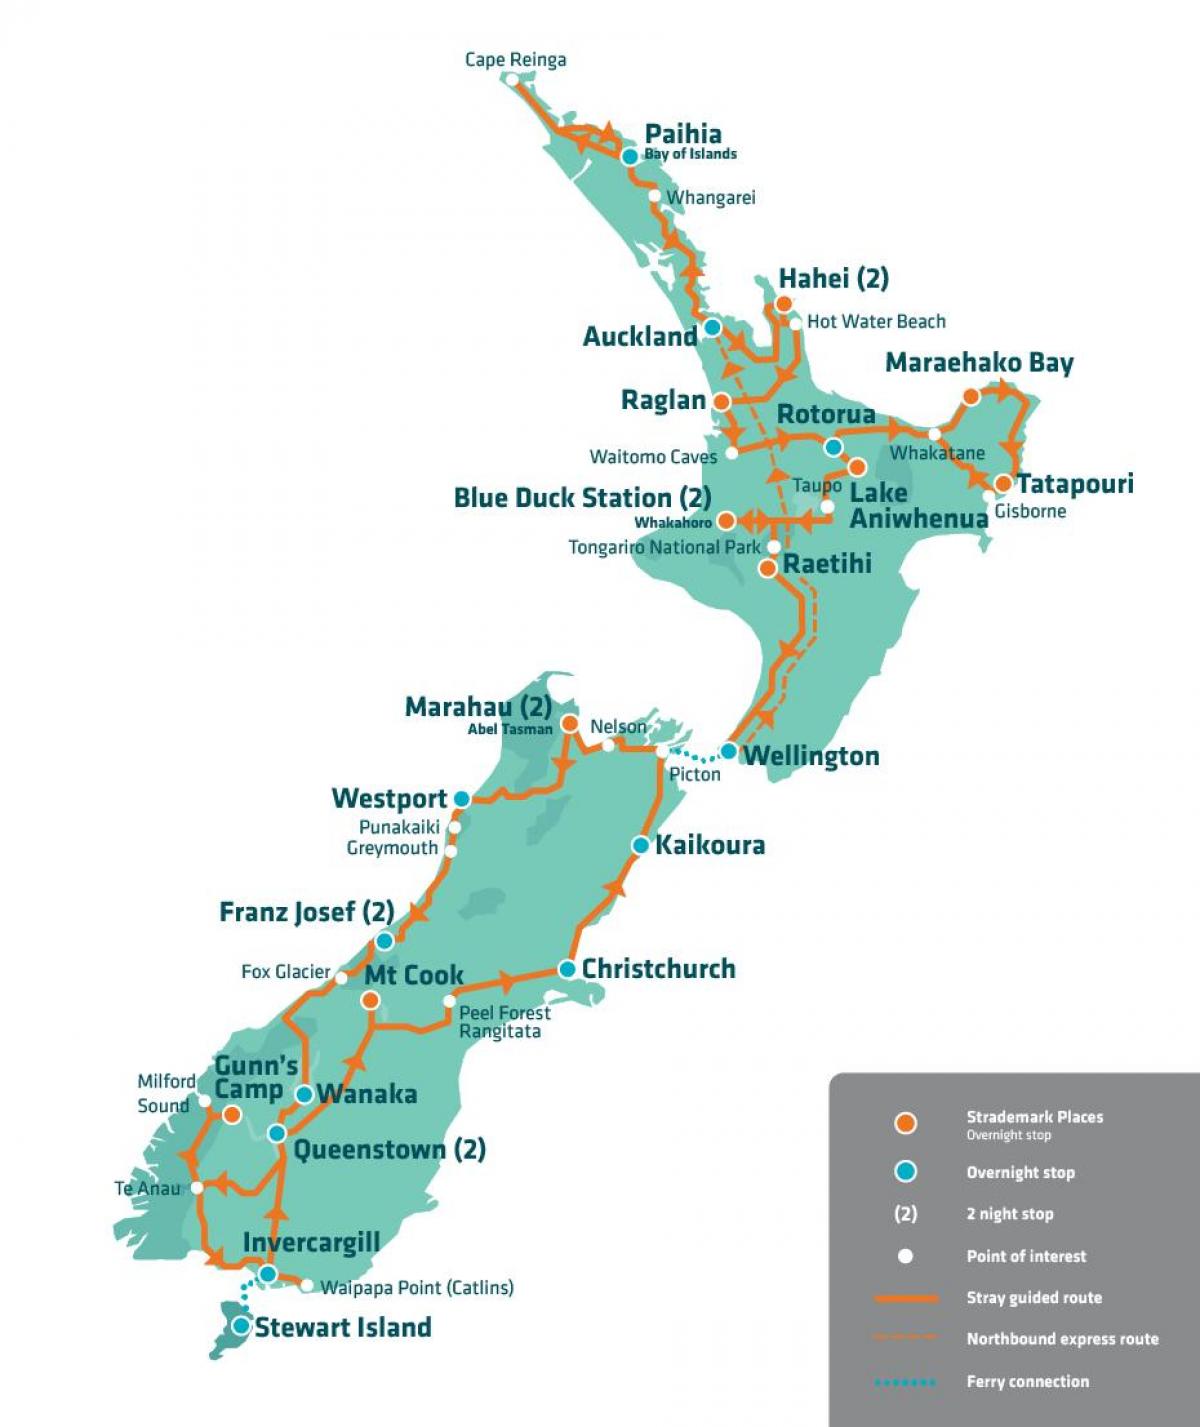 نیوزیلند جاذبه های توریستی نقشه